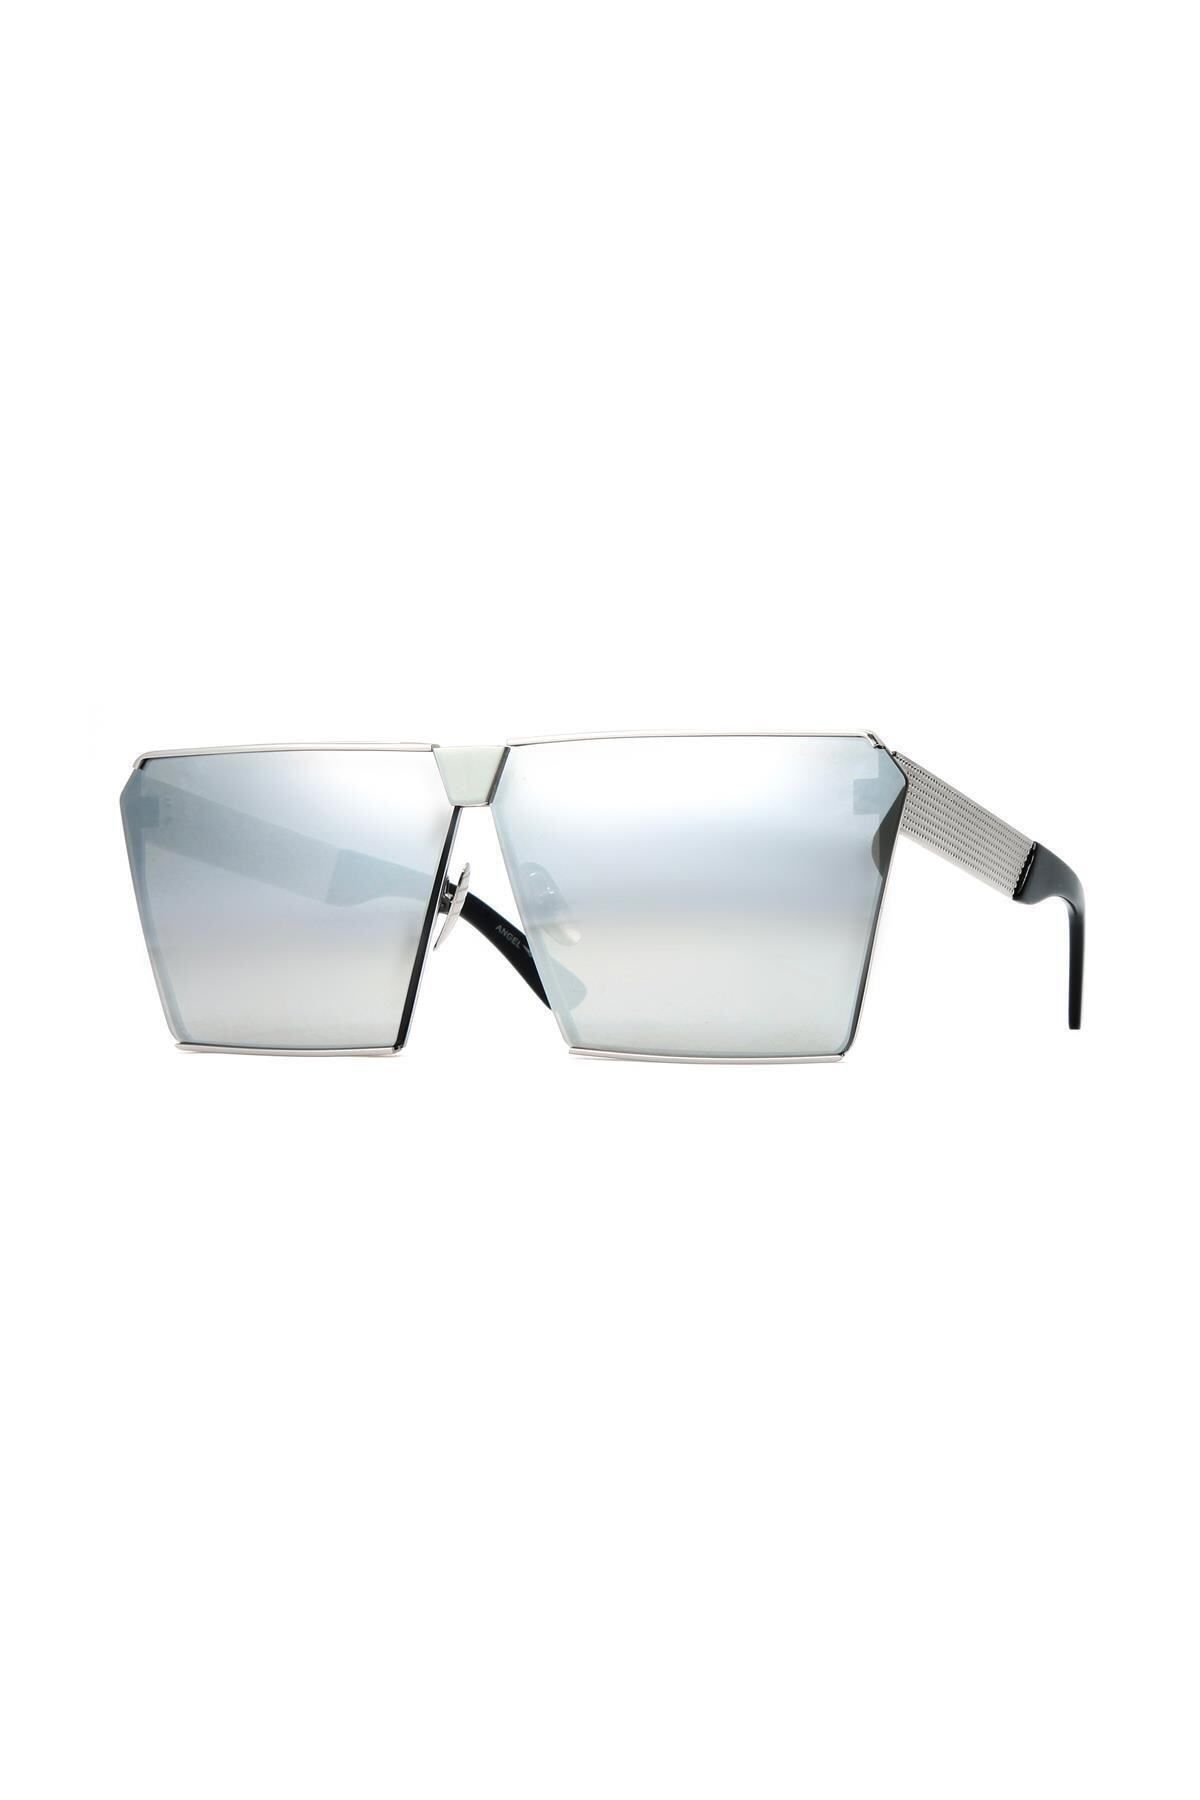 Angel Eyes UV400 Korumalı Gümüş Çerçeve Gümüş Aynalı Cam Snowboard/Kayak Gözlüğü